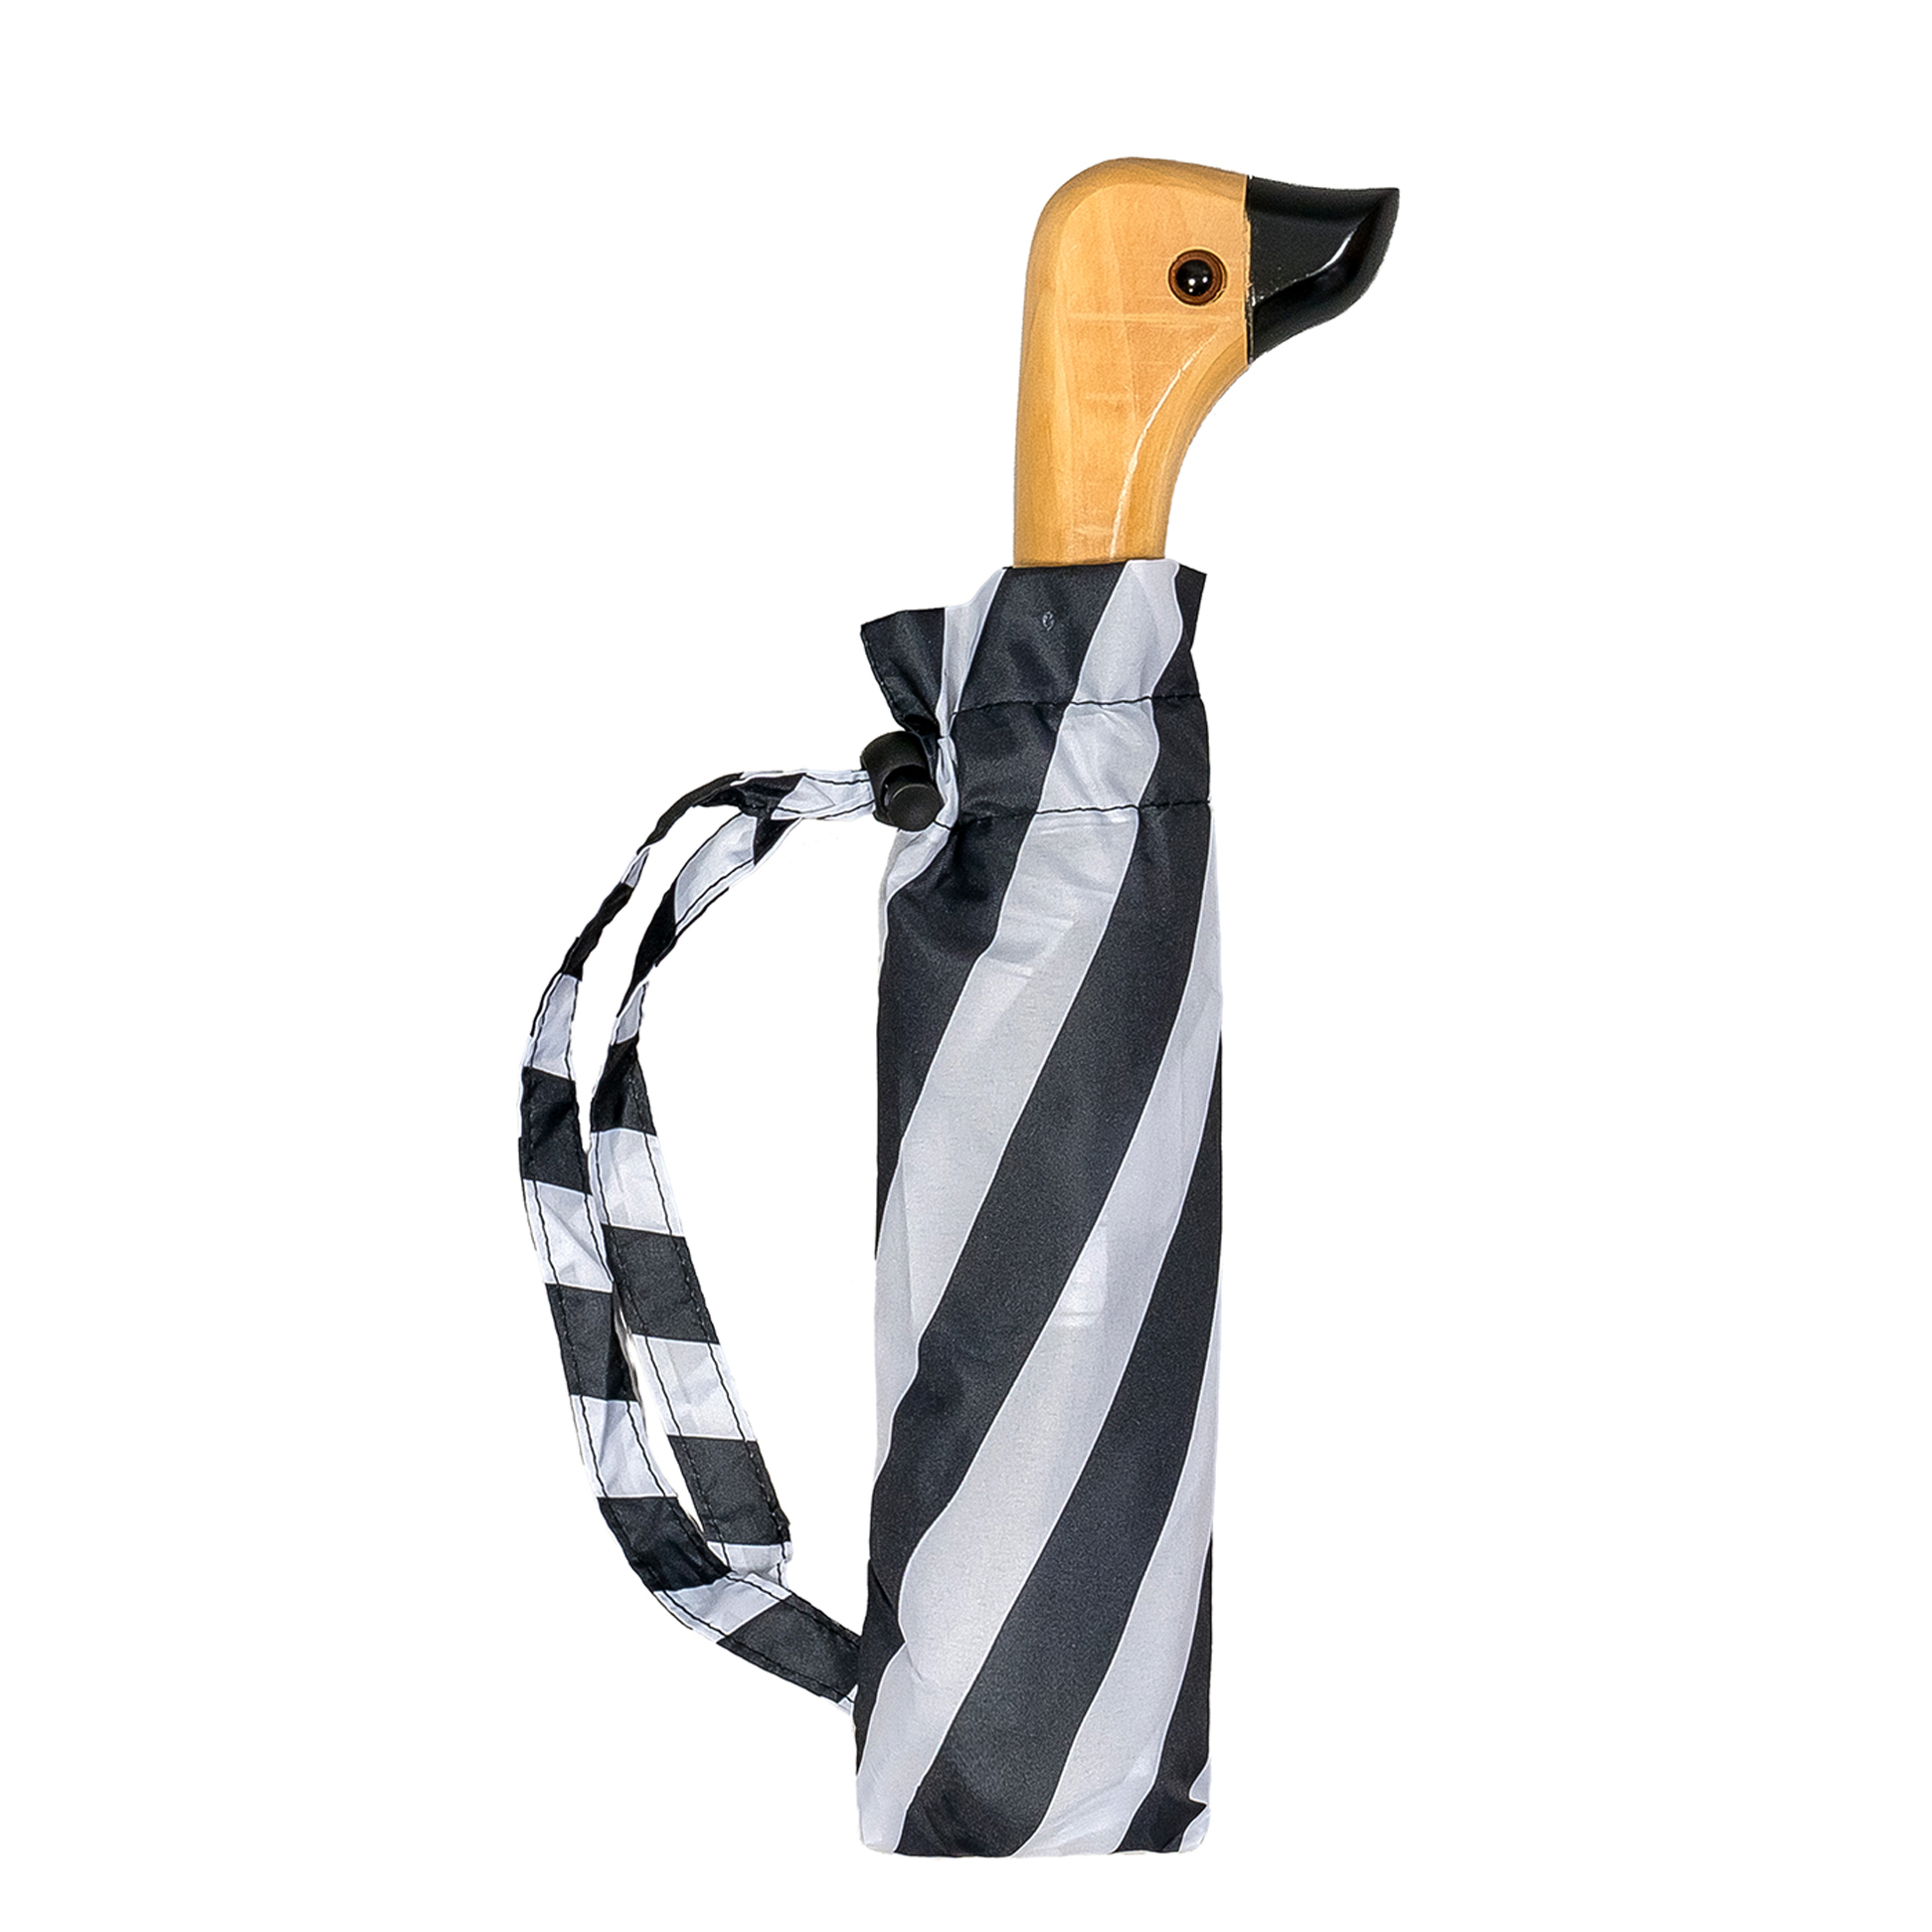 Duck Head Black and White Striped Umbrella (31903S)